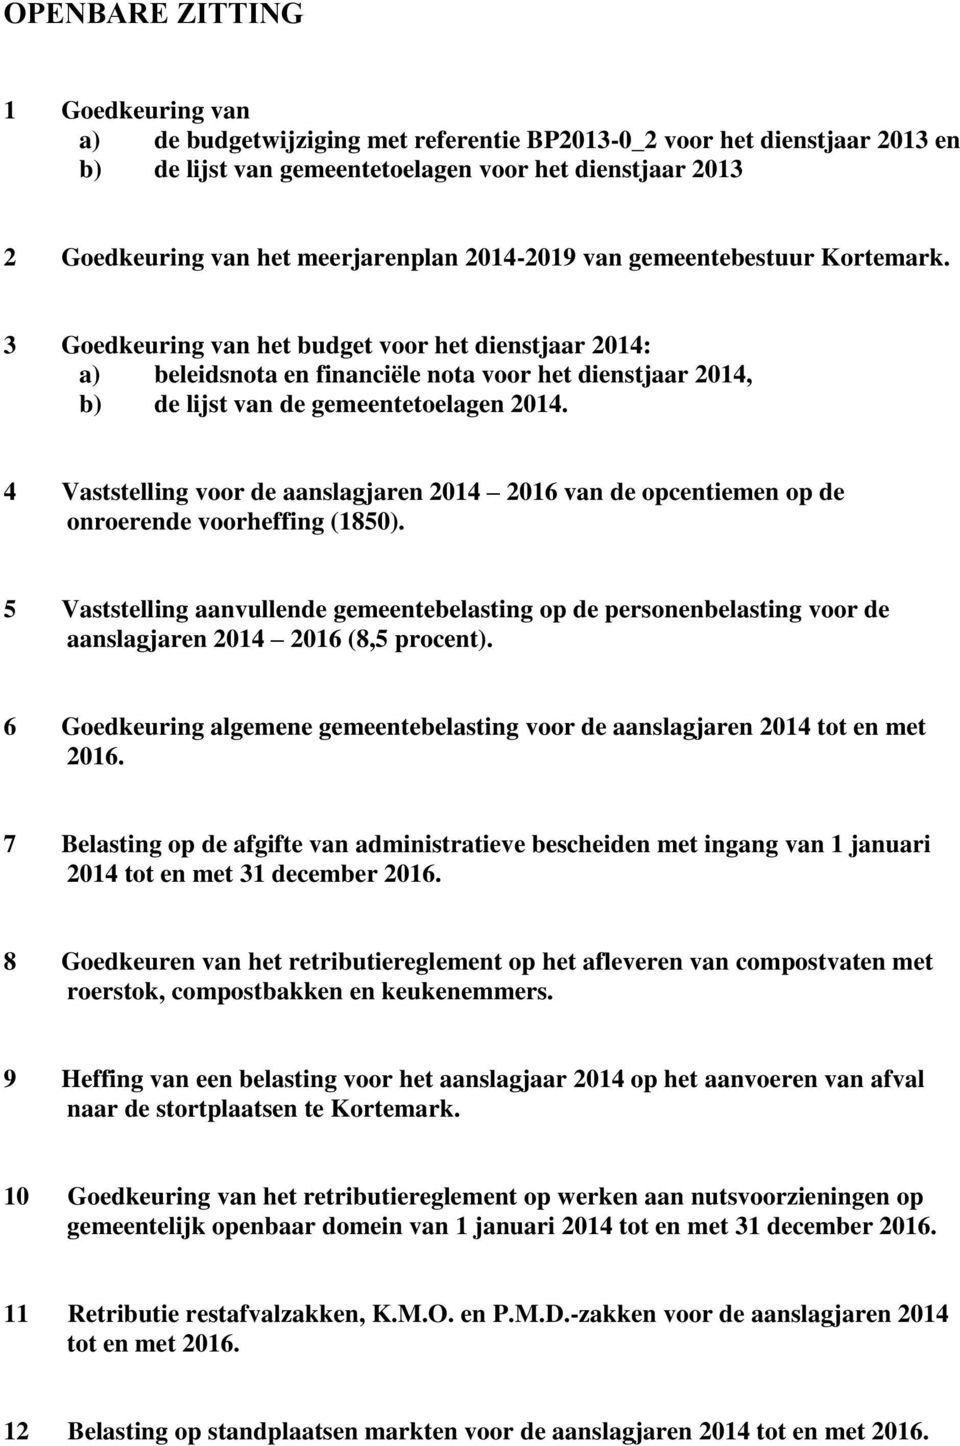 3 Goedkeuring van het budget voor het dienstjaar 2014: a) beleidsnota en financiële nota voor het dienstjaar 2014, b) de lijst van de gemeentetoelagen 2014.